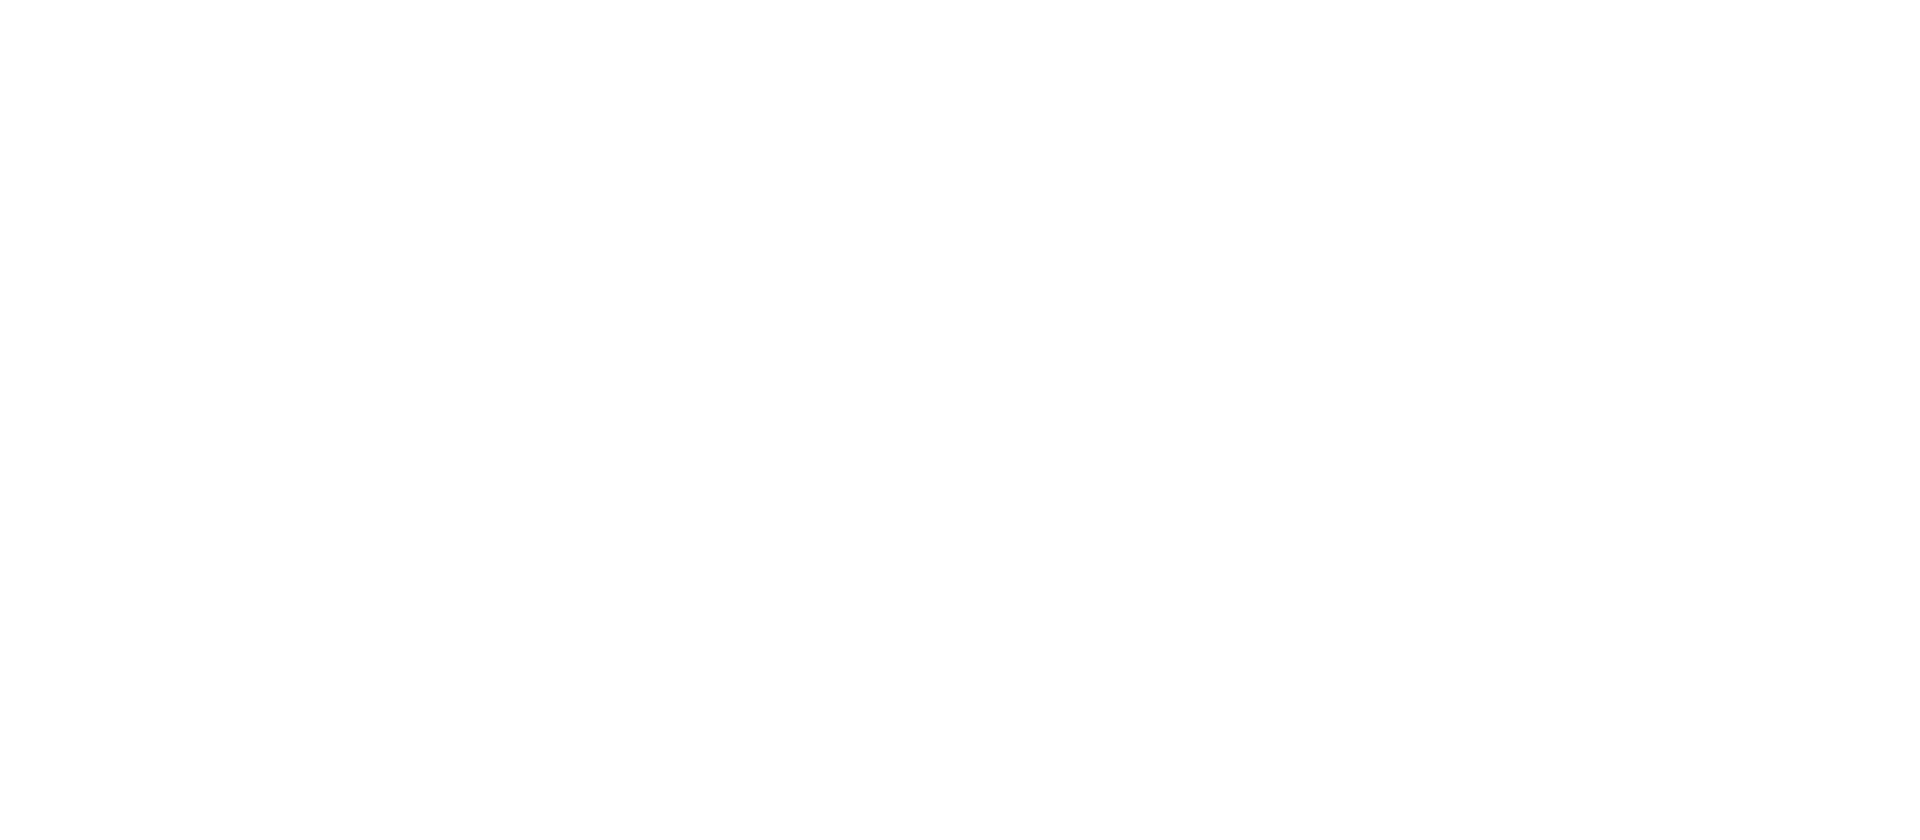 Загрузка, «-Брик», форма «Слим», 200 мл с трубочкой, таблица